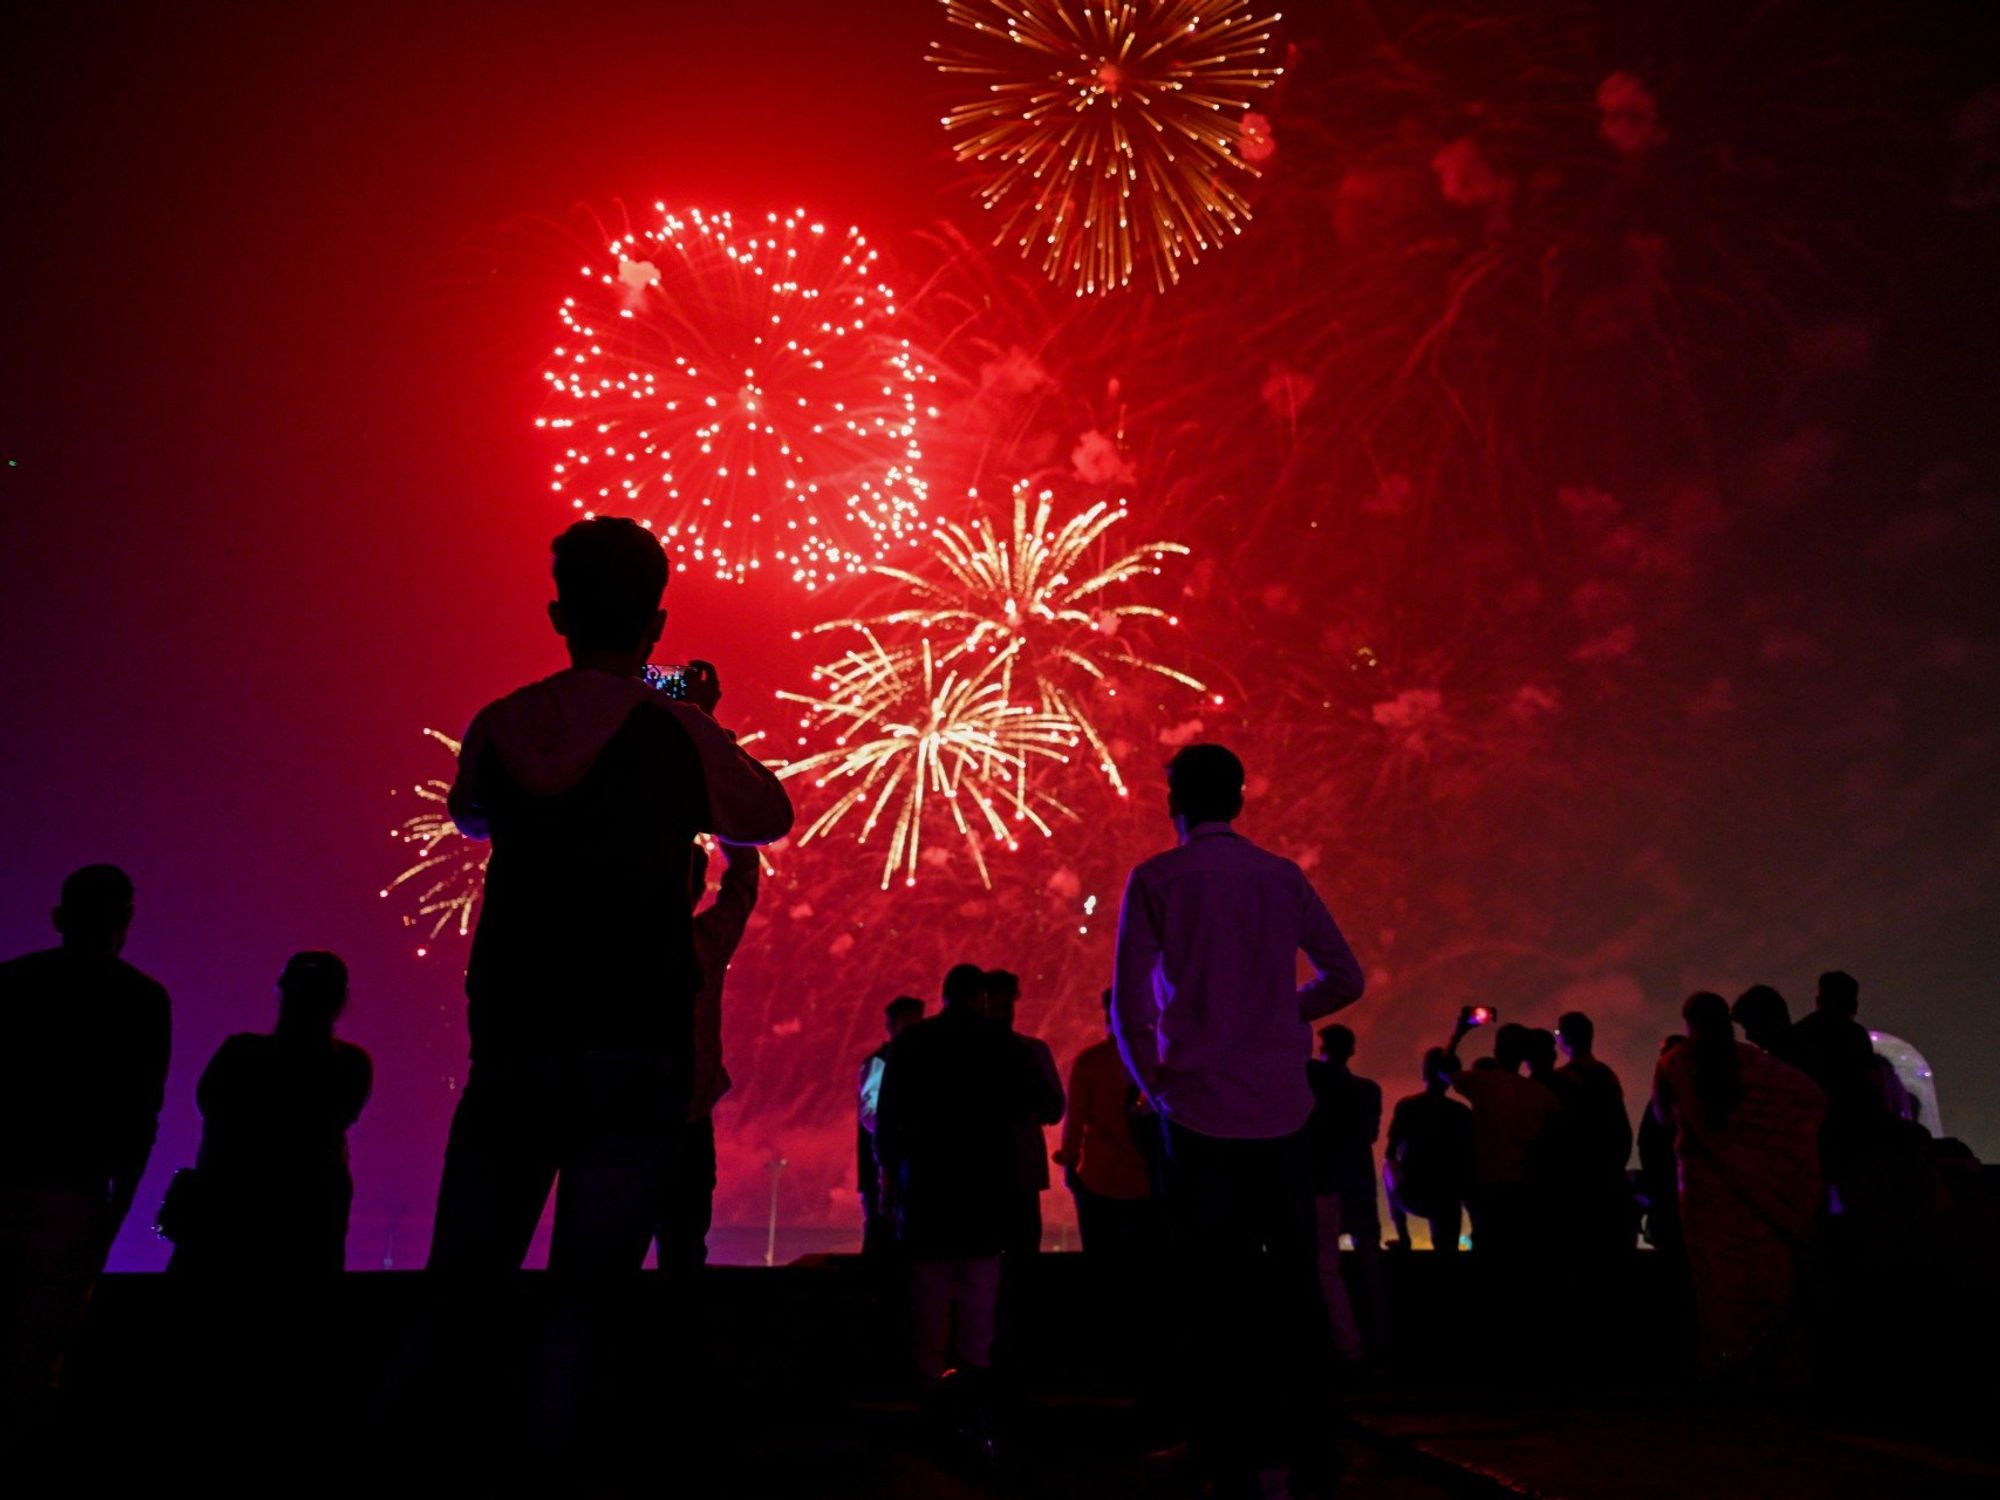 Asian festival fireworks